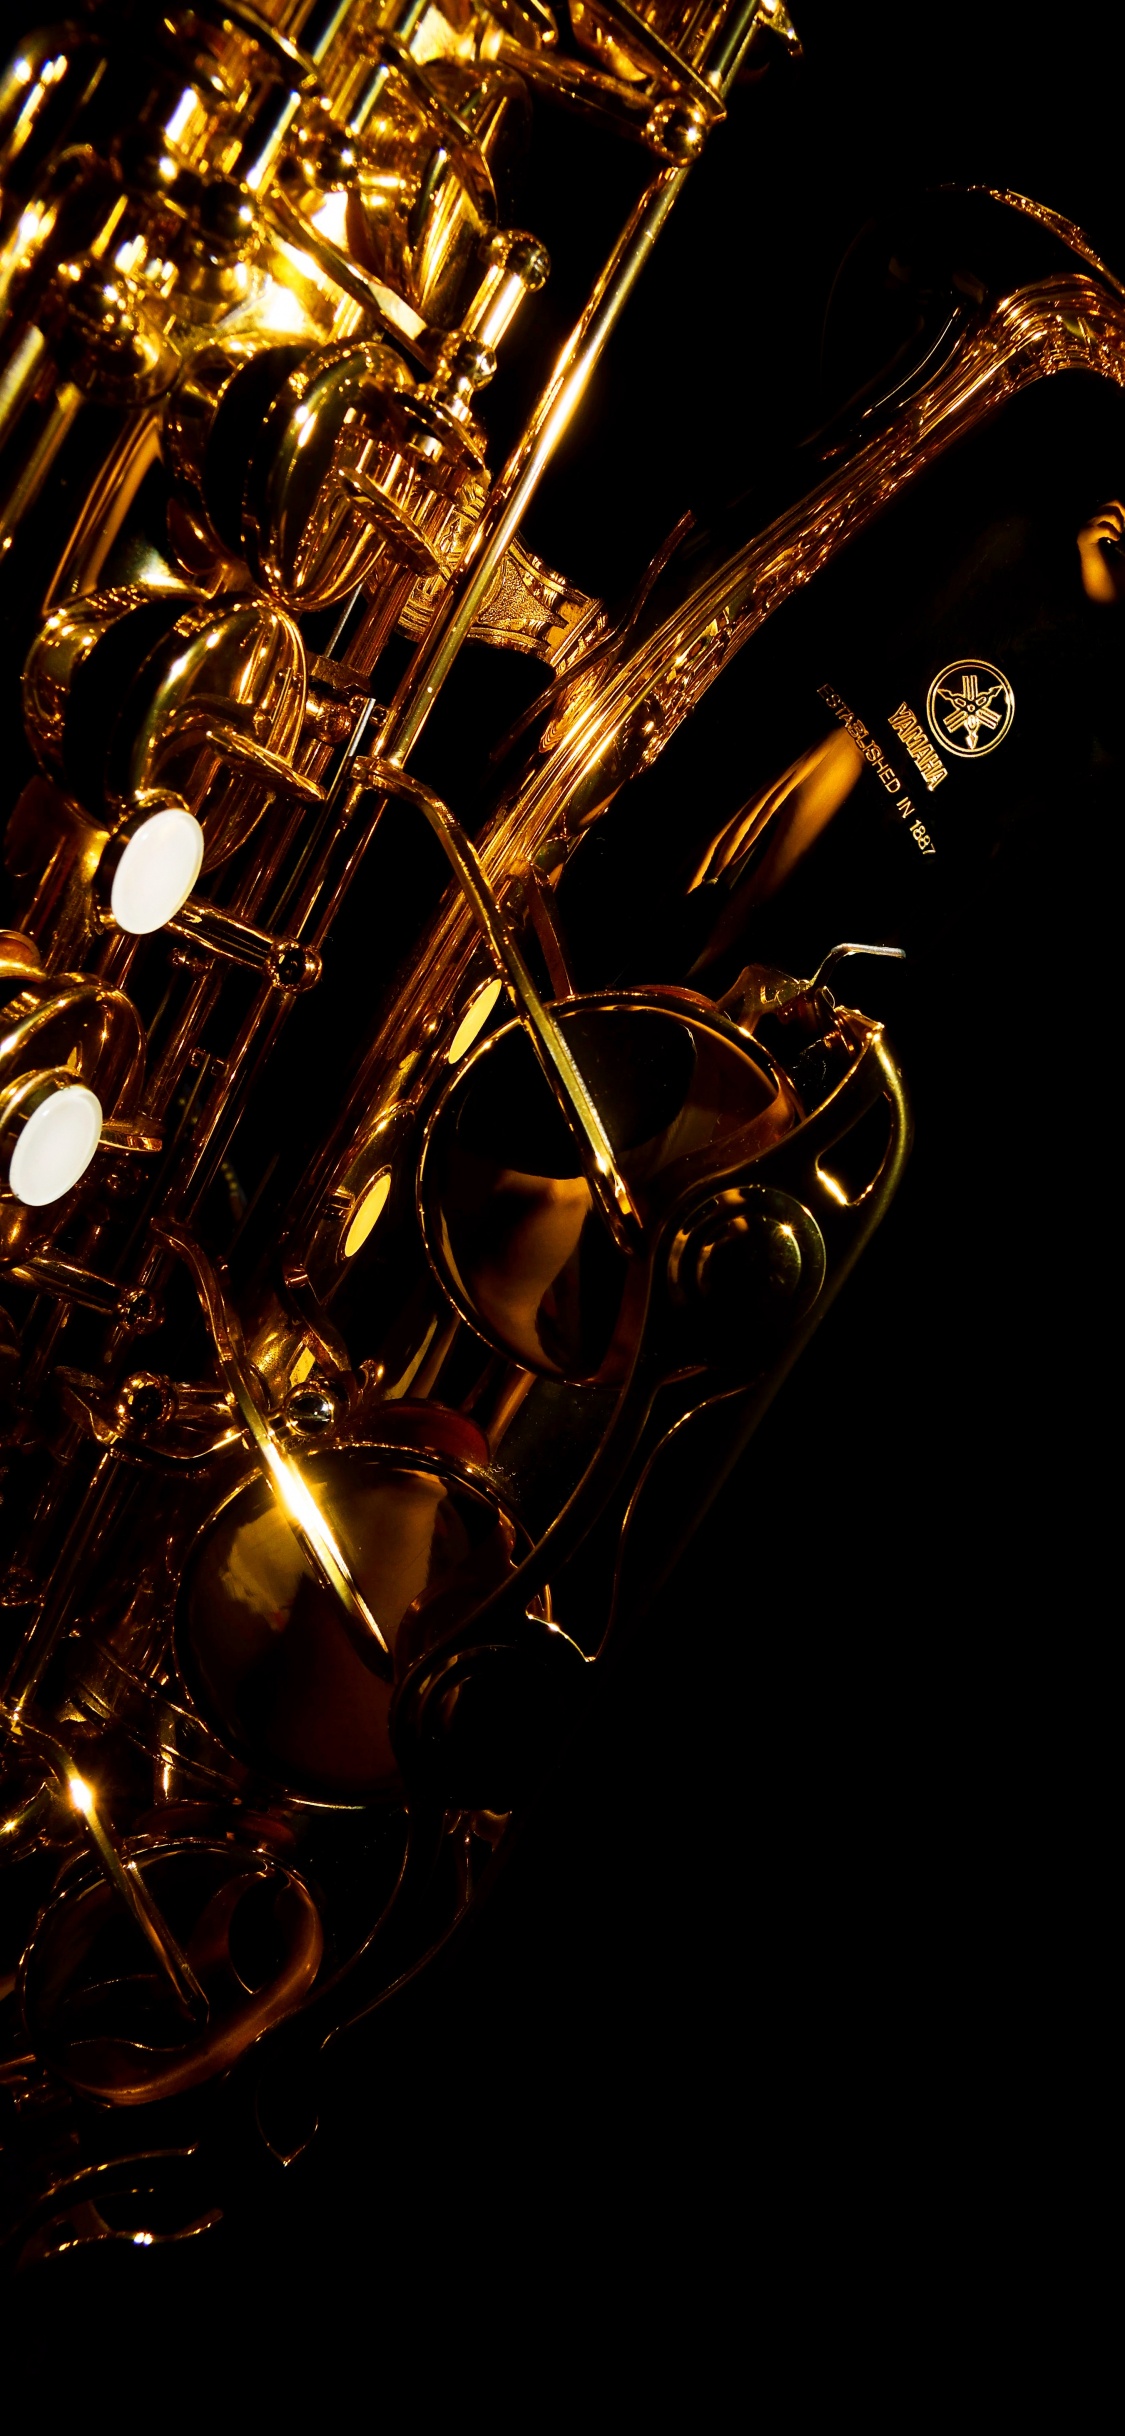 Trumpet, Saxophone, Brass Instrument, Wind Instrument, Violin. Wallpaper in 1125x2436 Resolution